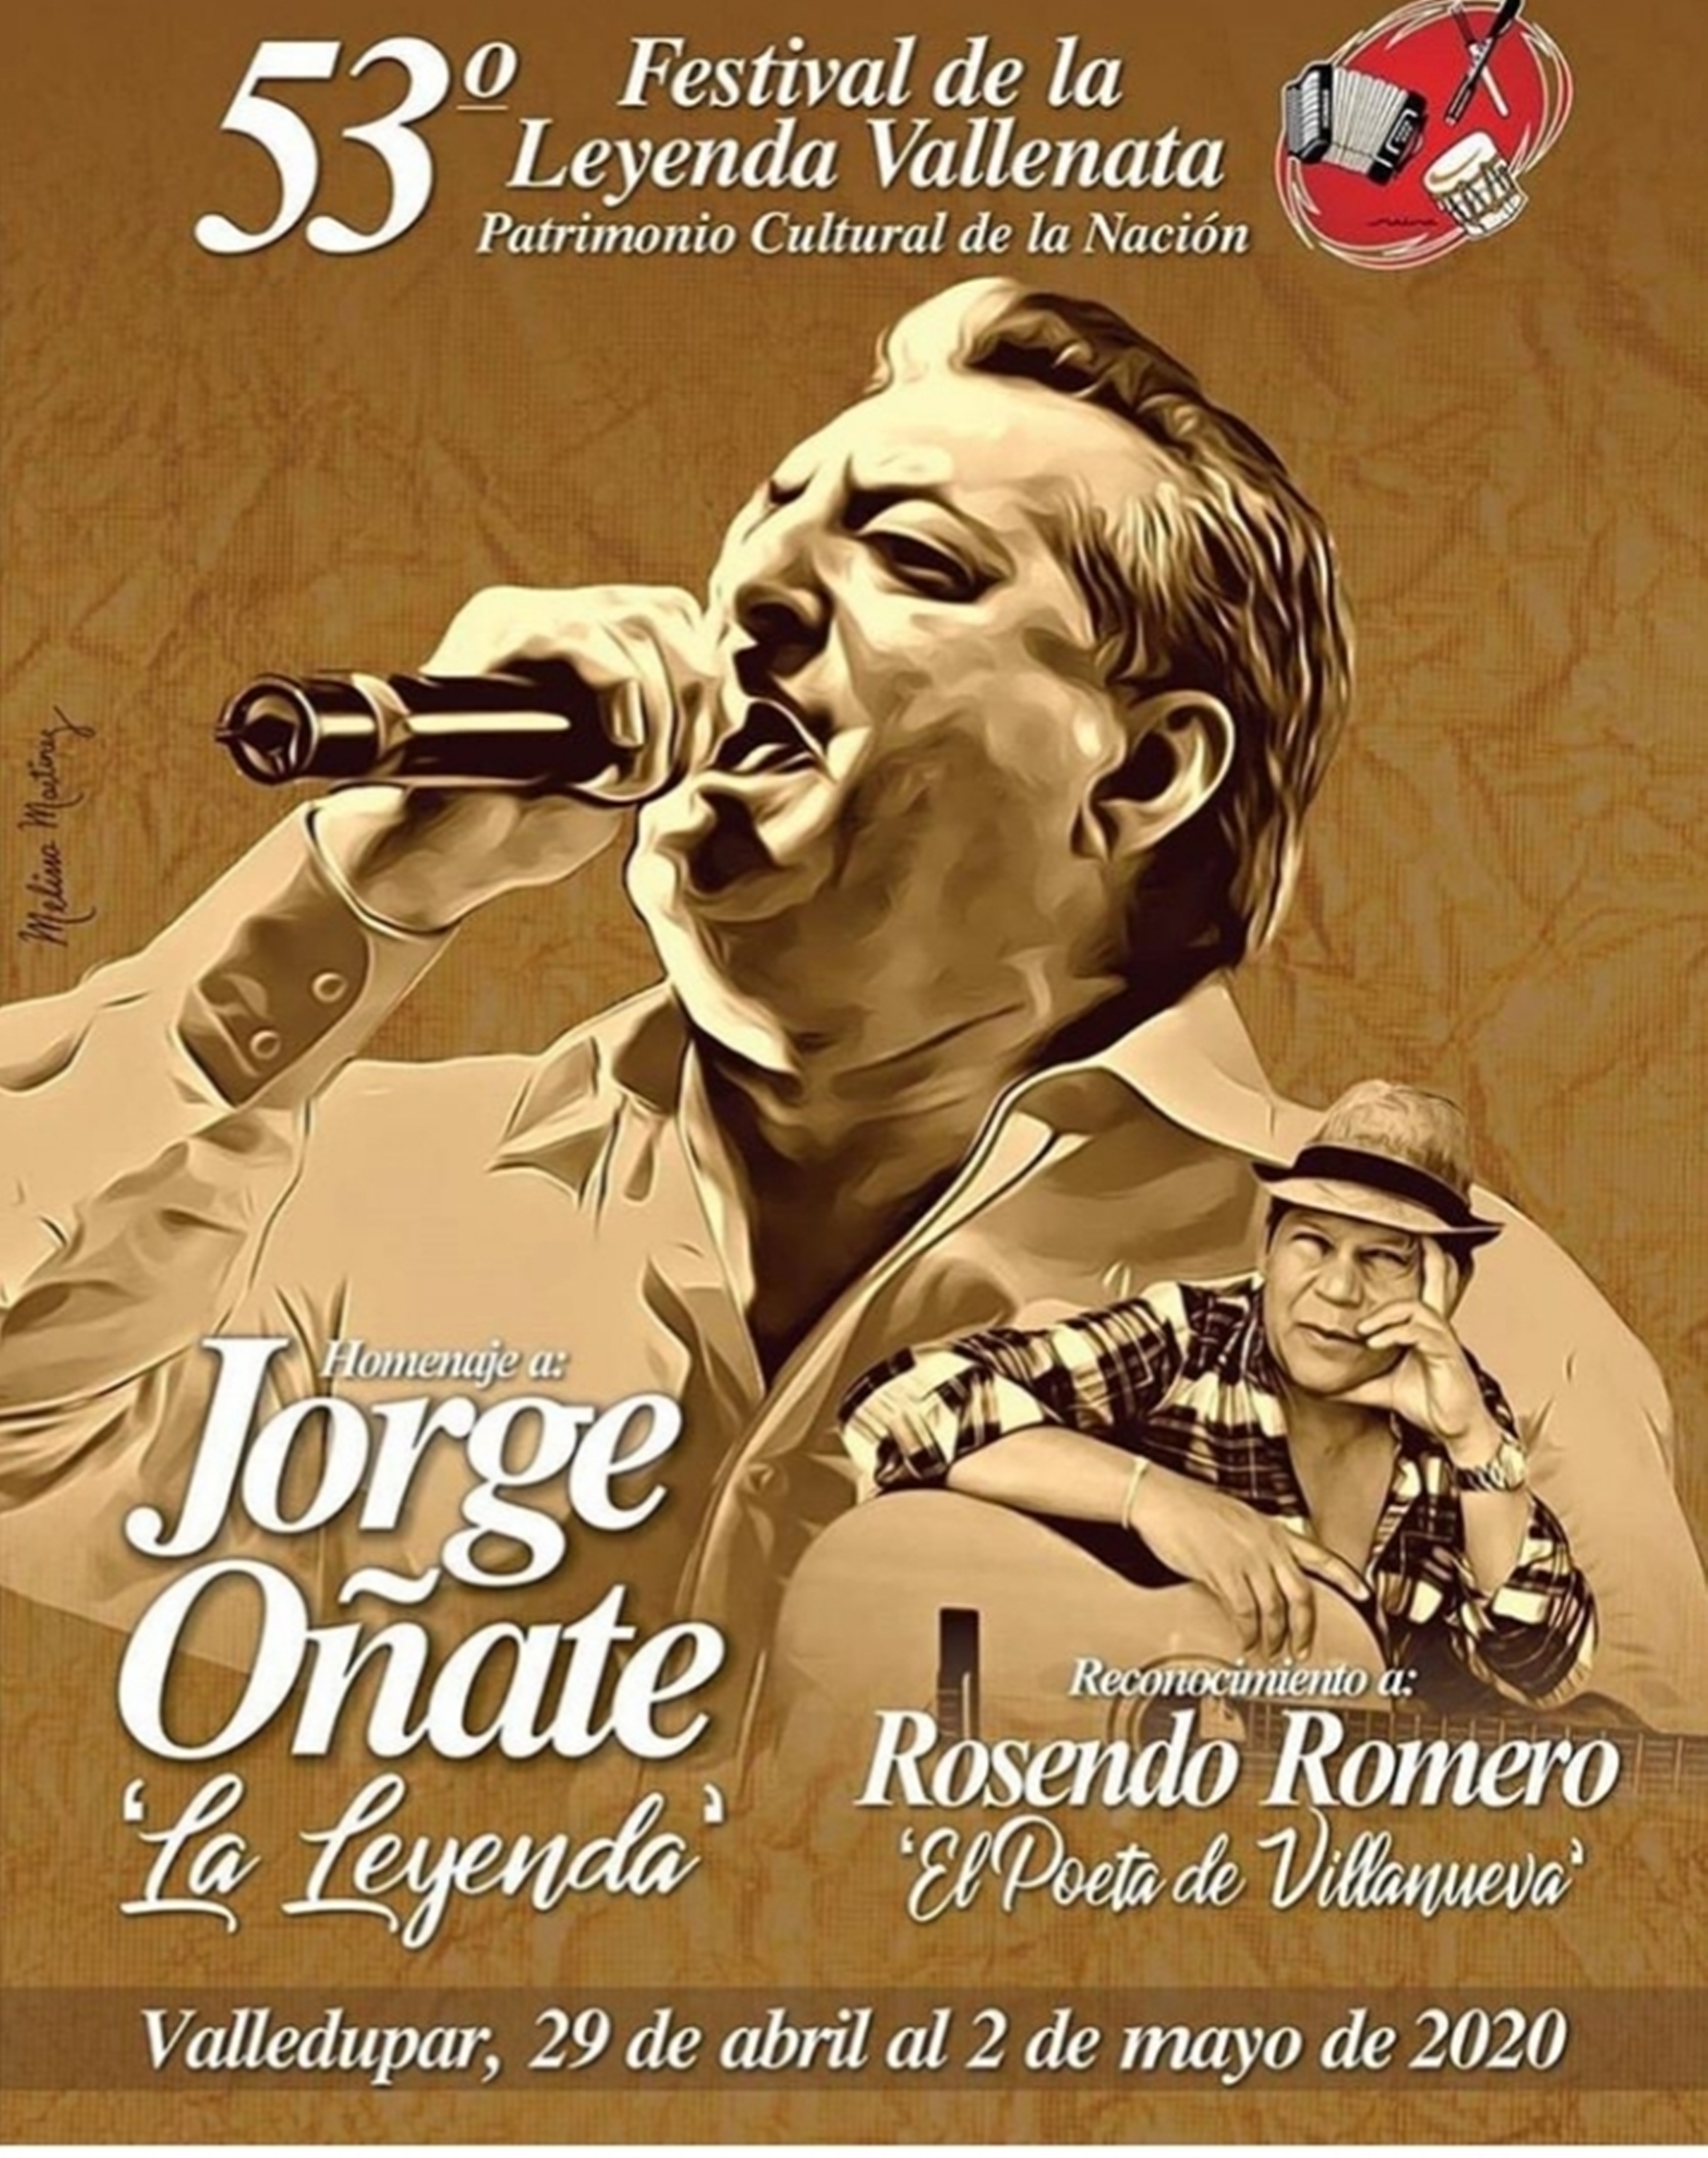 ‘Los años dorados del vallenato’, afiche promocional del 53° Festival de la Leyenda Vallenata